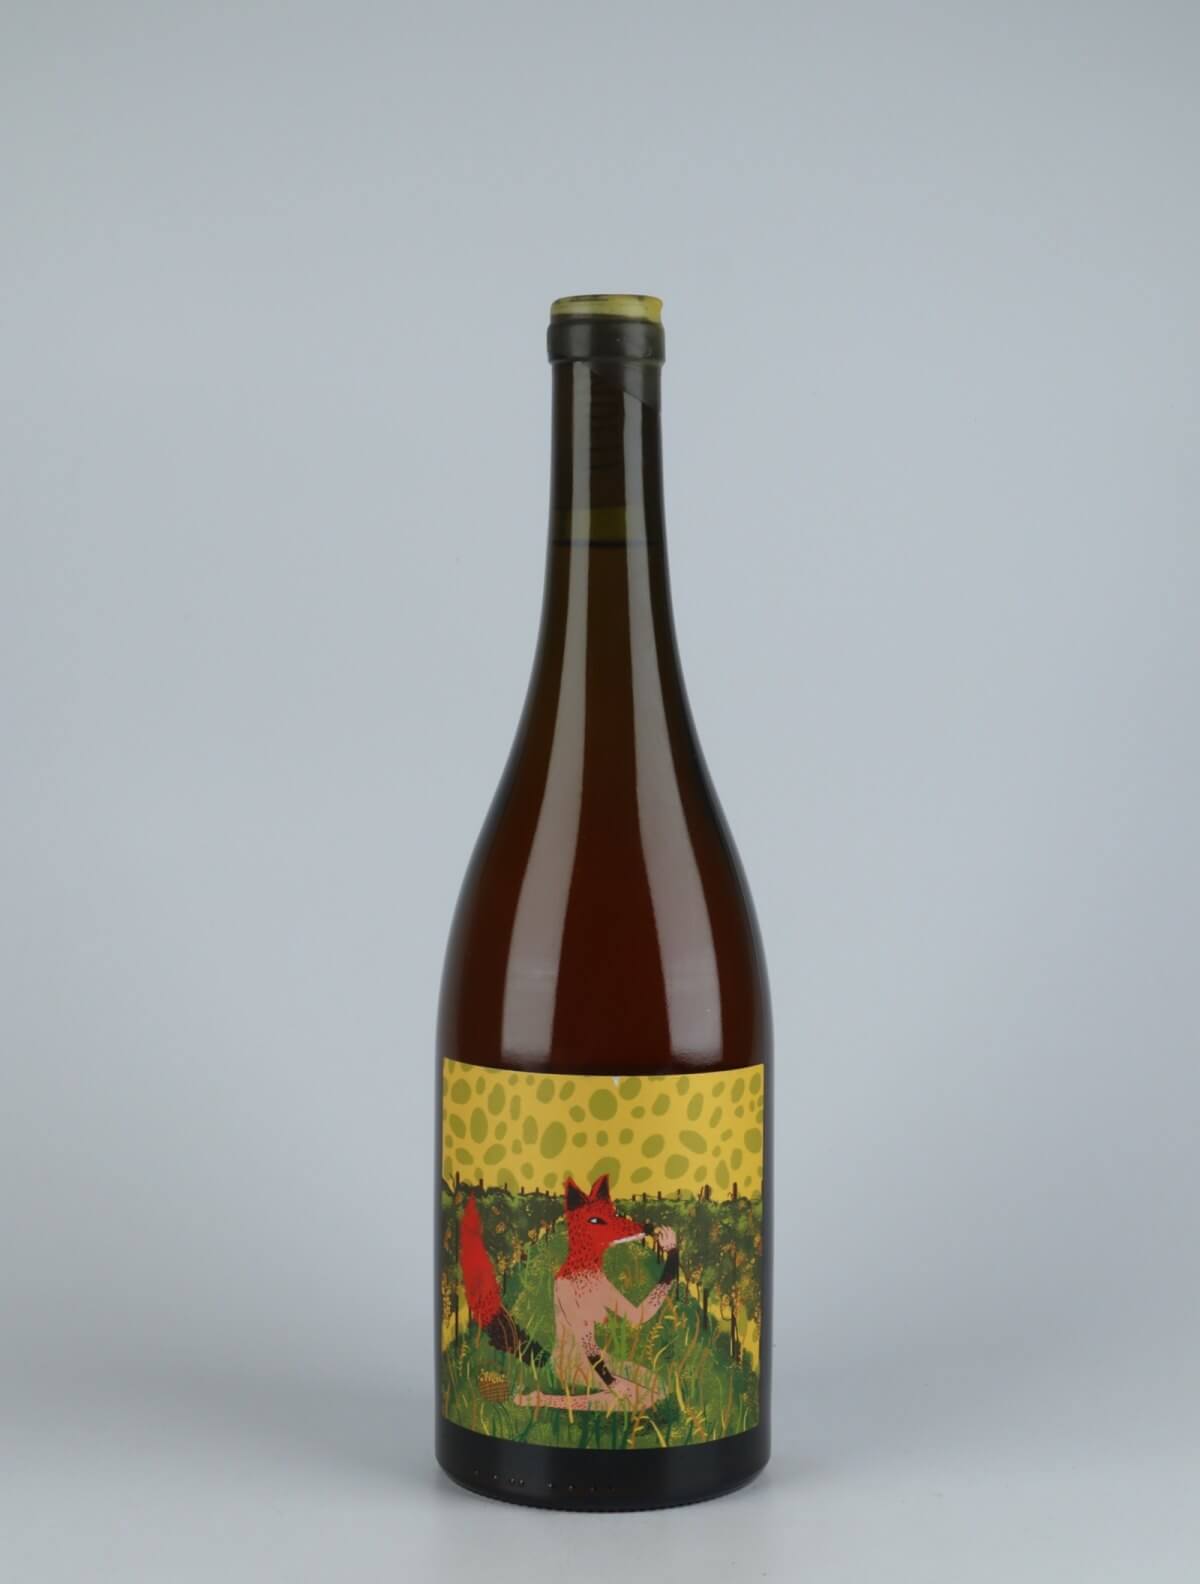 A bottle 2020 Otono Orange wine from Kindeli, Nelson in New Zealand